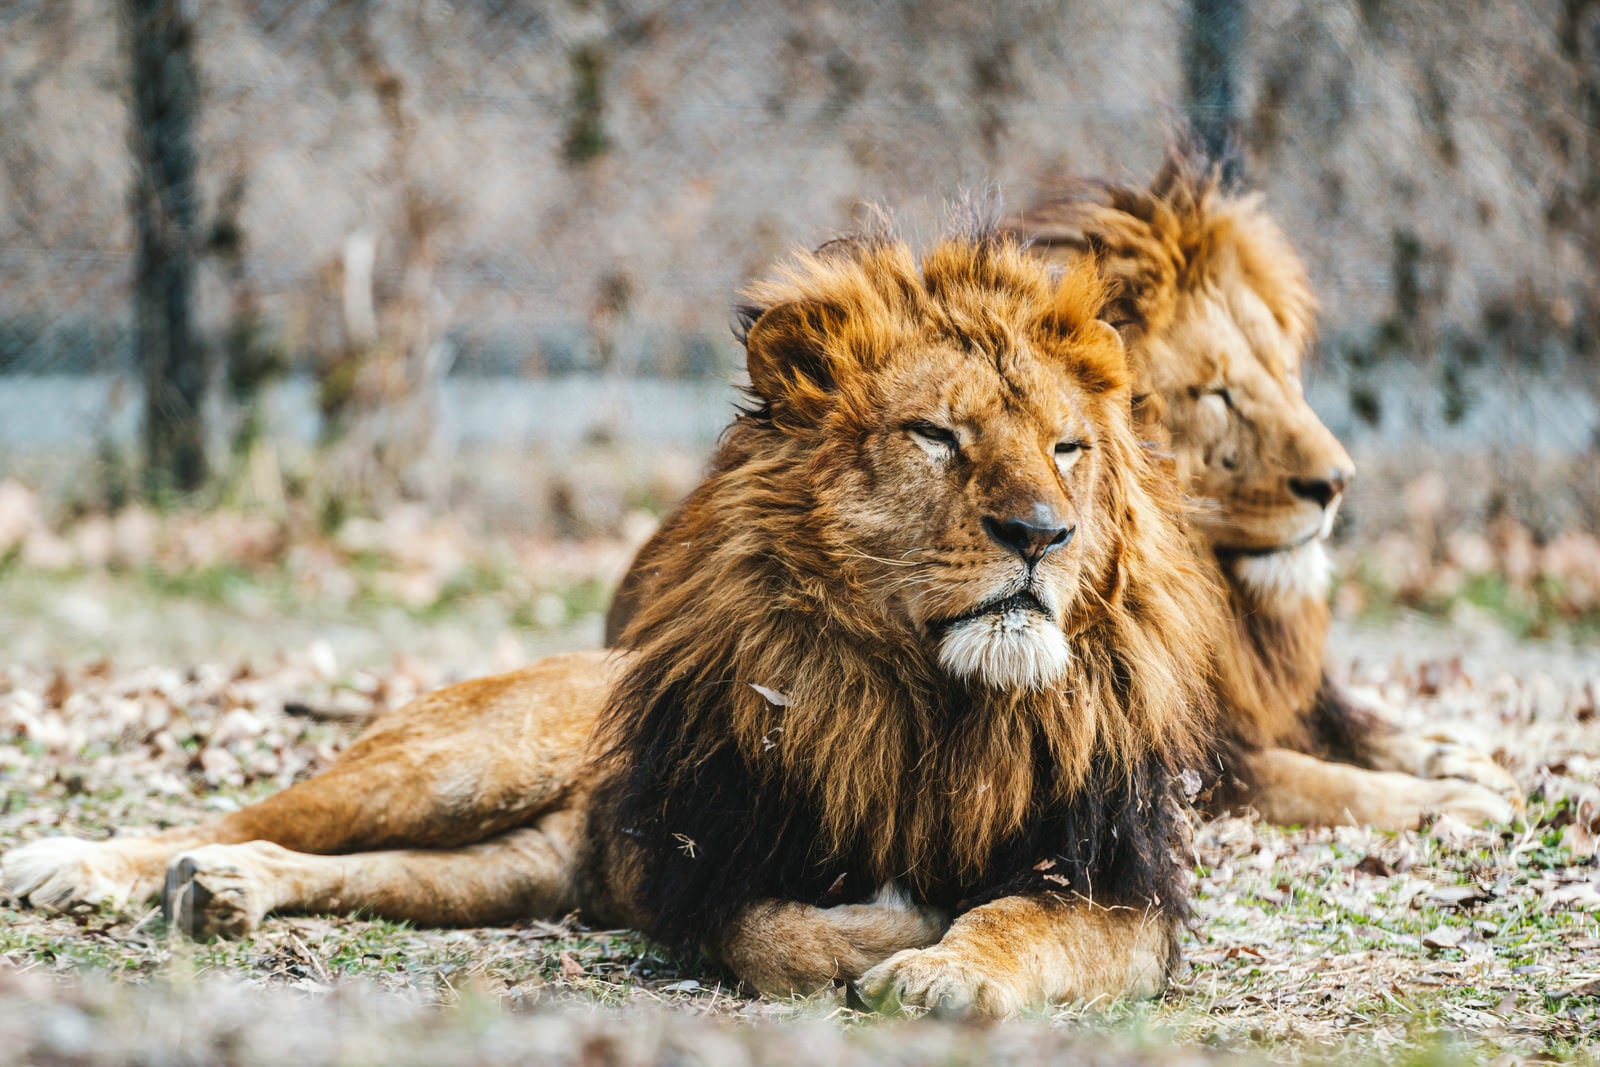 「横たわって休憩する雄ライオン」の写真